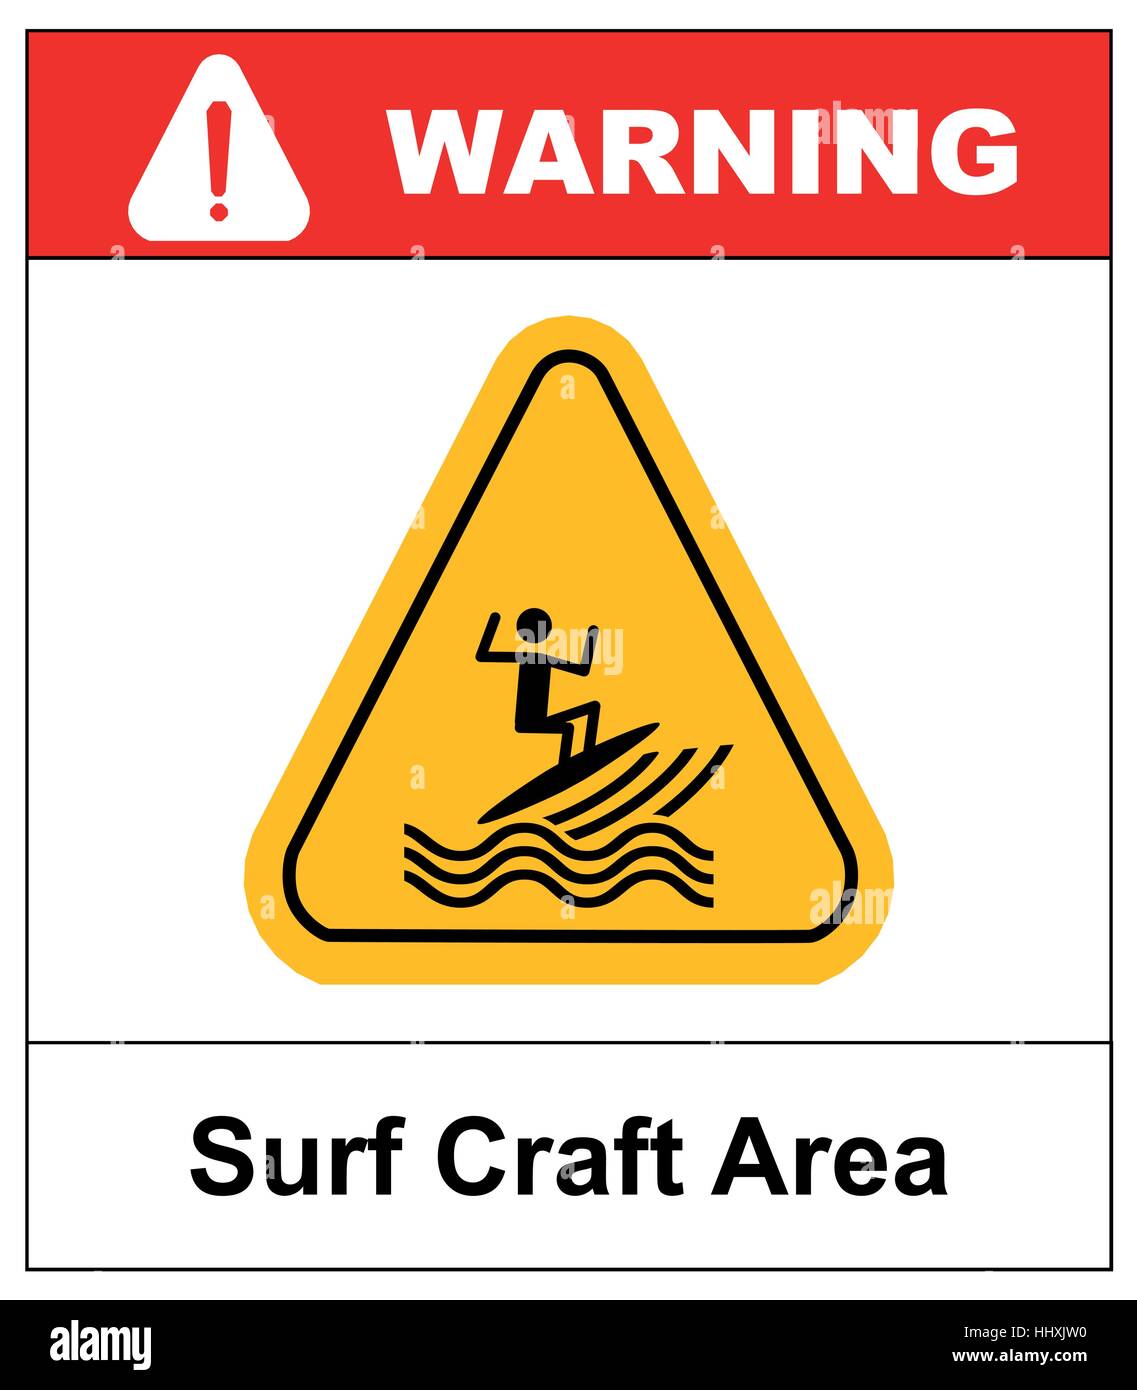 Sufr craft area. Zone de surf d'illustration vectorielle en symbole triangle jaune isolé sur blanc. Bannière d'avertissement pour les ligne de côte Illustration de Vecteur